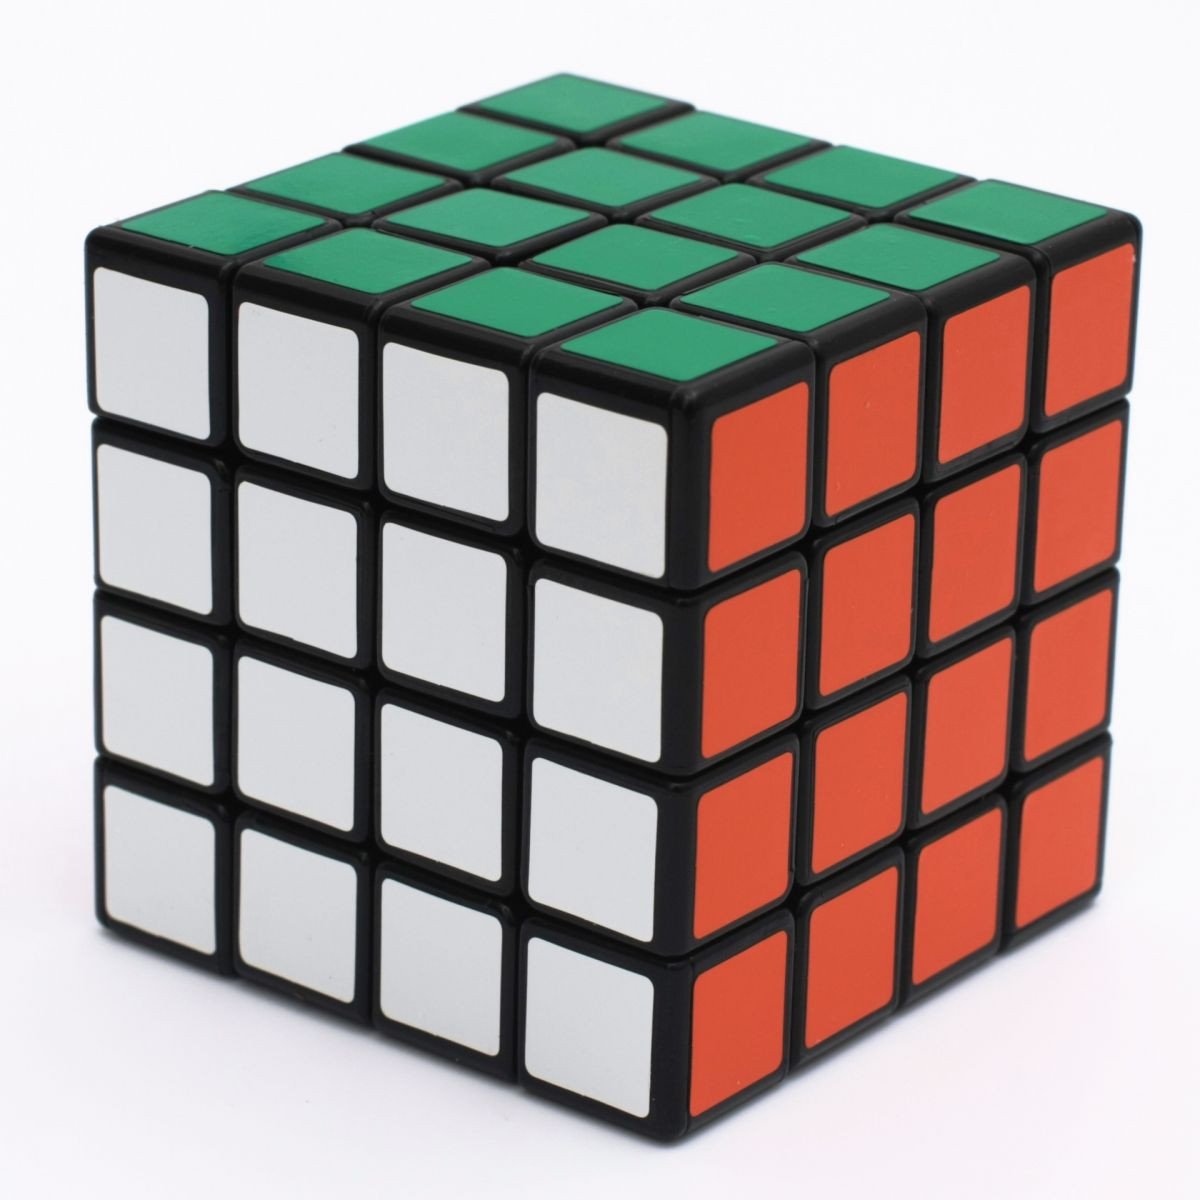 Bước C: Giải hoàn mỹ Rubik 4x4 theo đuổi cách thức giải Rubik 3x3 21